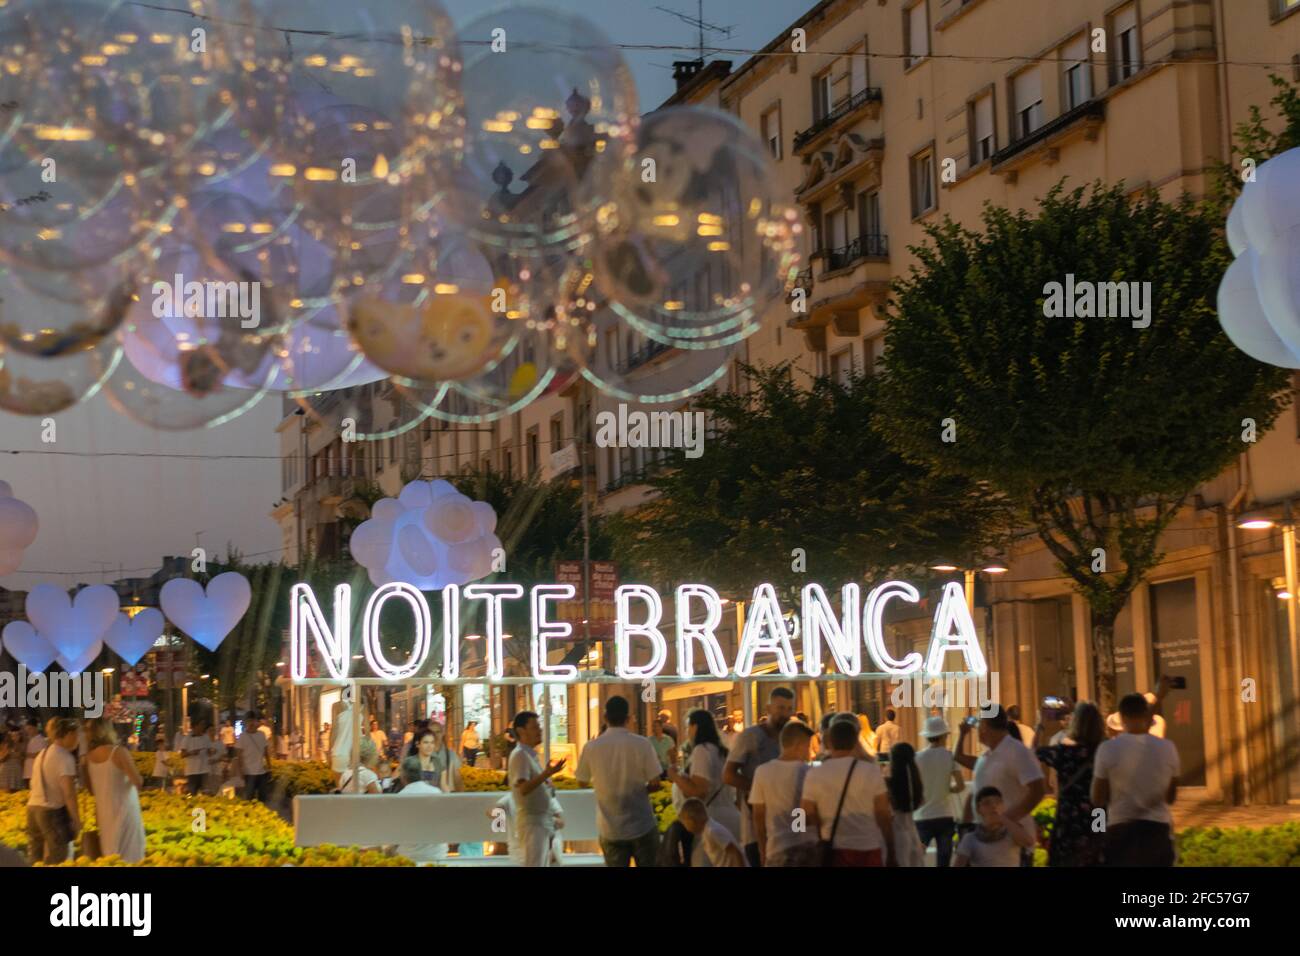 Noite Branca, Touristikveranstaltung bei weißer Nacht in Braga, Nordportugal. Avenida da Liberdade, Stadt Braga. Stockfoto